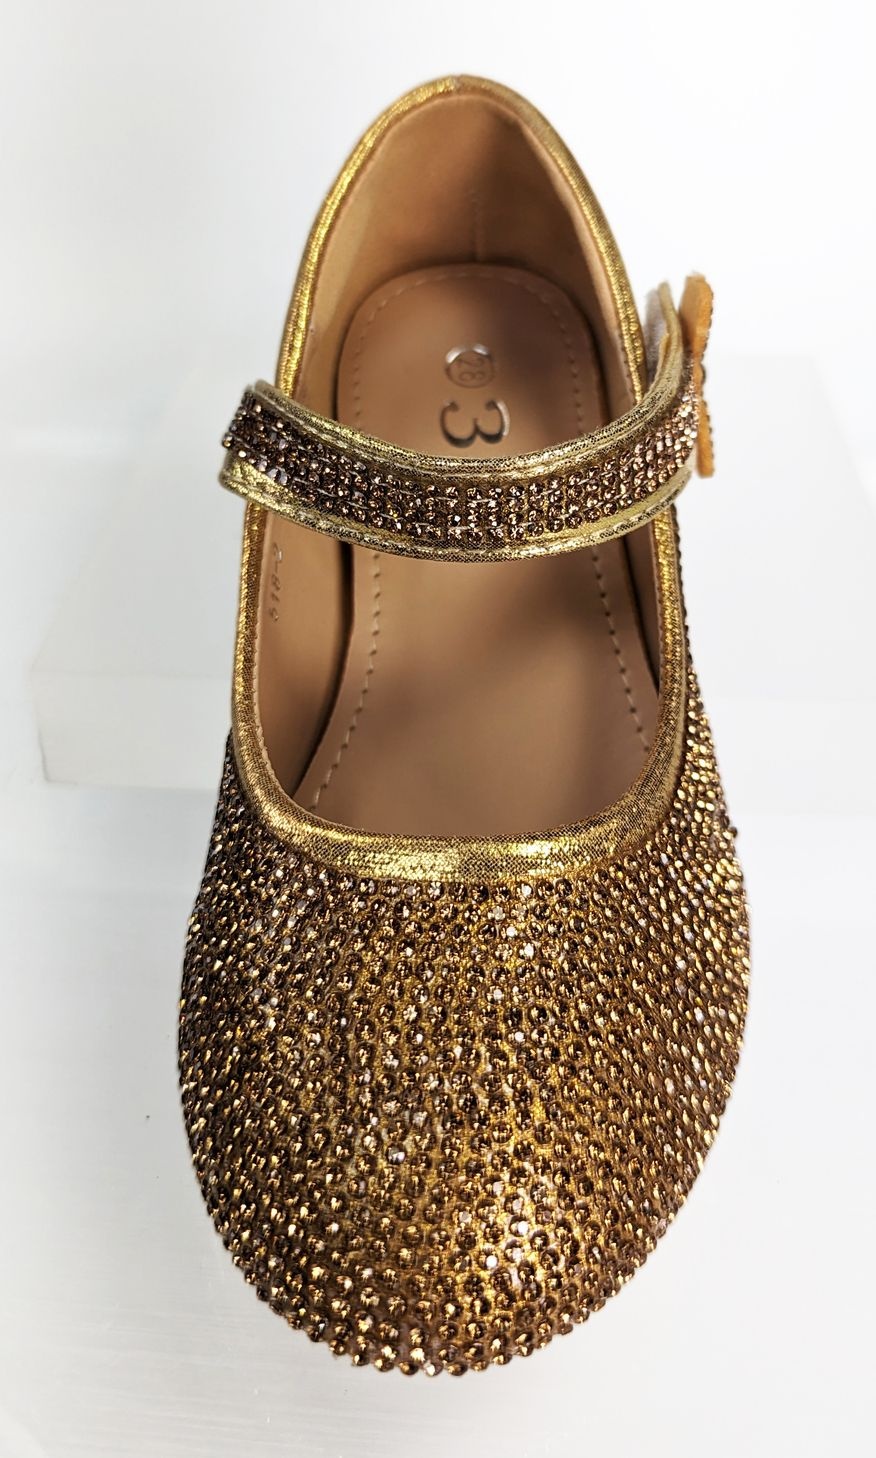 Meisjesschoenen Meisjesschoen - Spaanse schoentjes - strass steentjes - goud